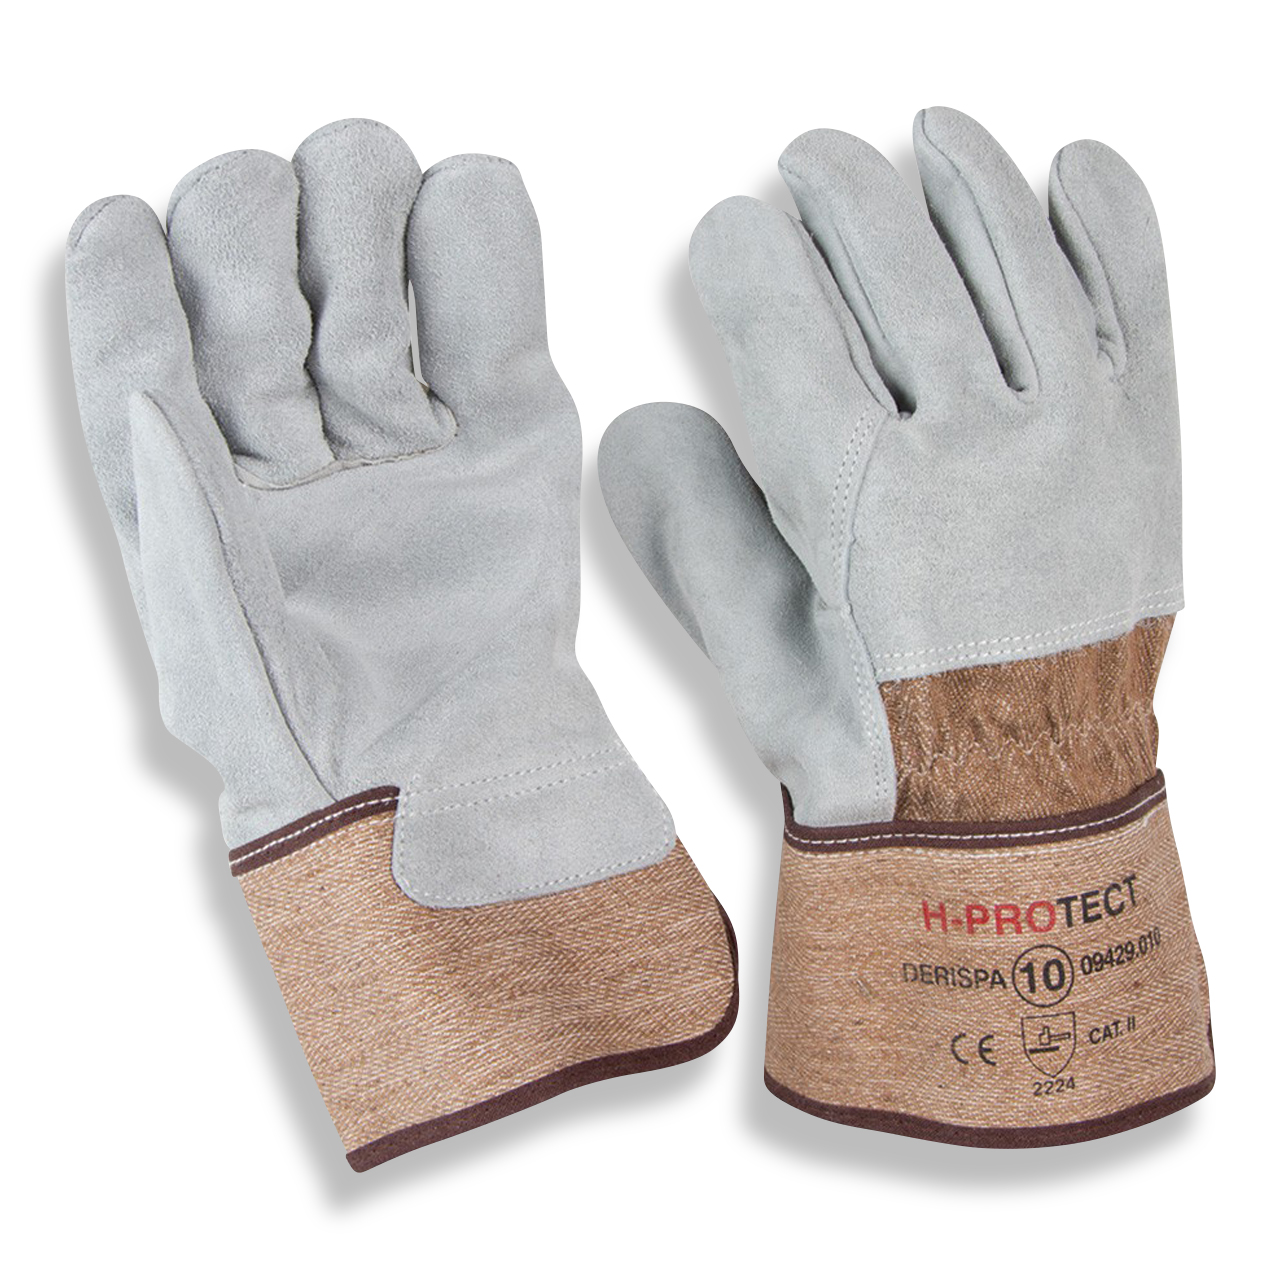 Leder-Handschuh H-Protect Derispa